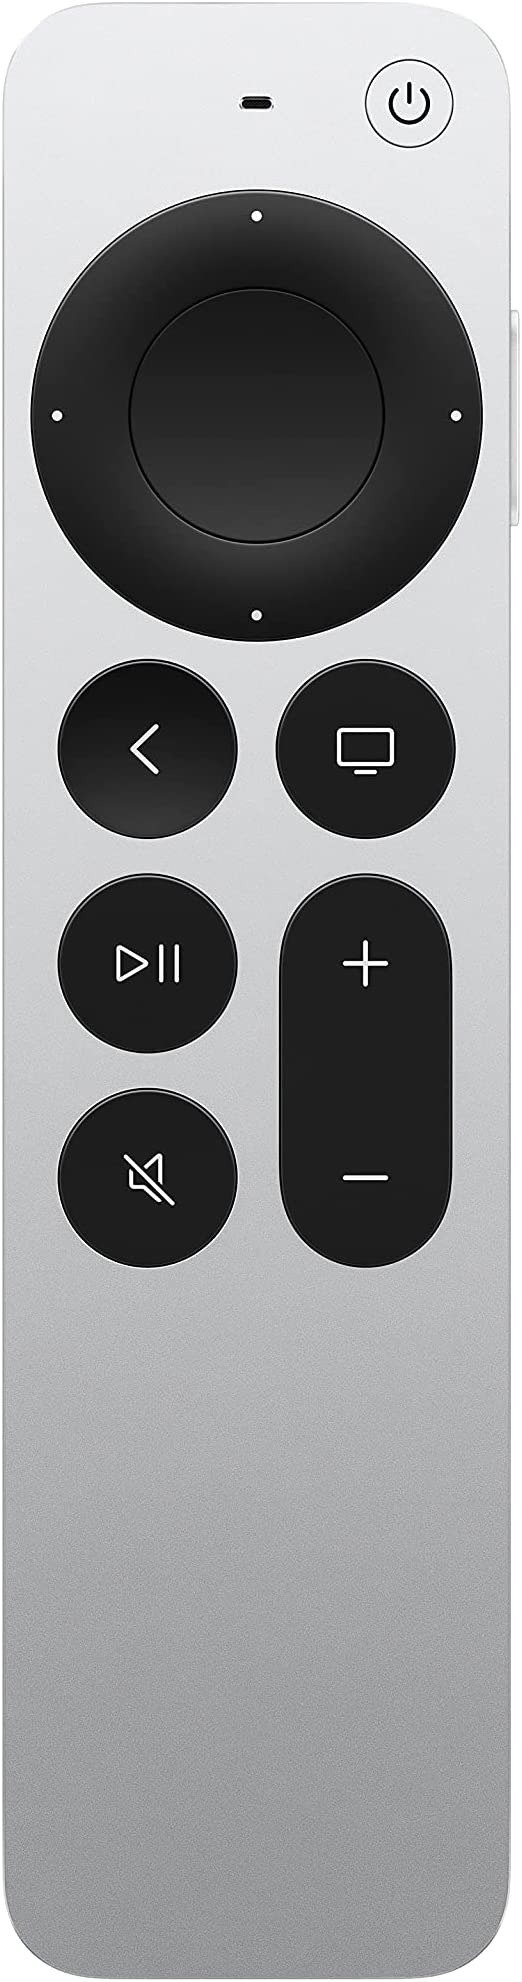 TV Siri 智能遥控器